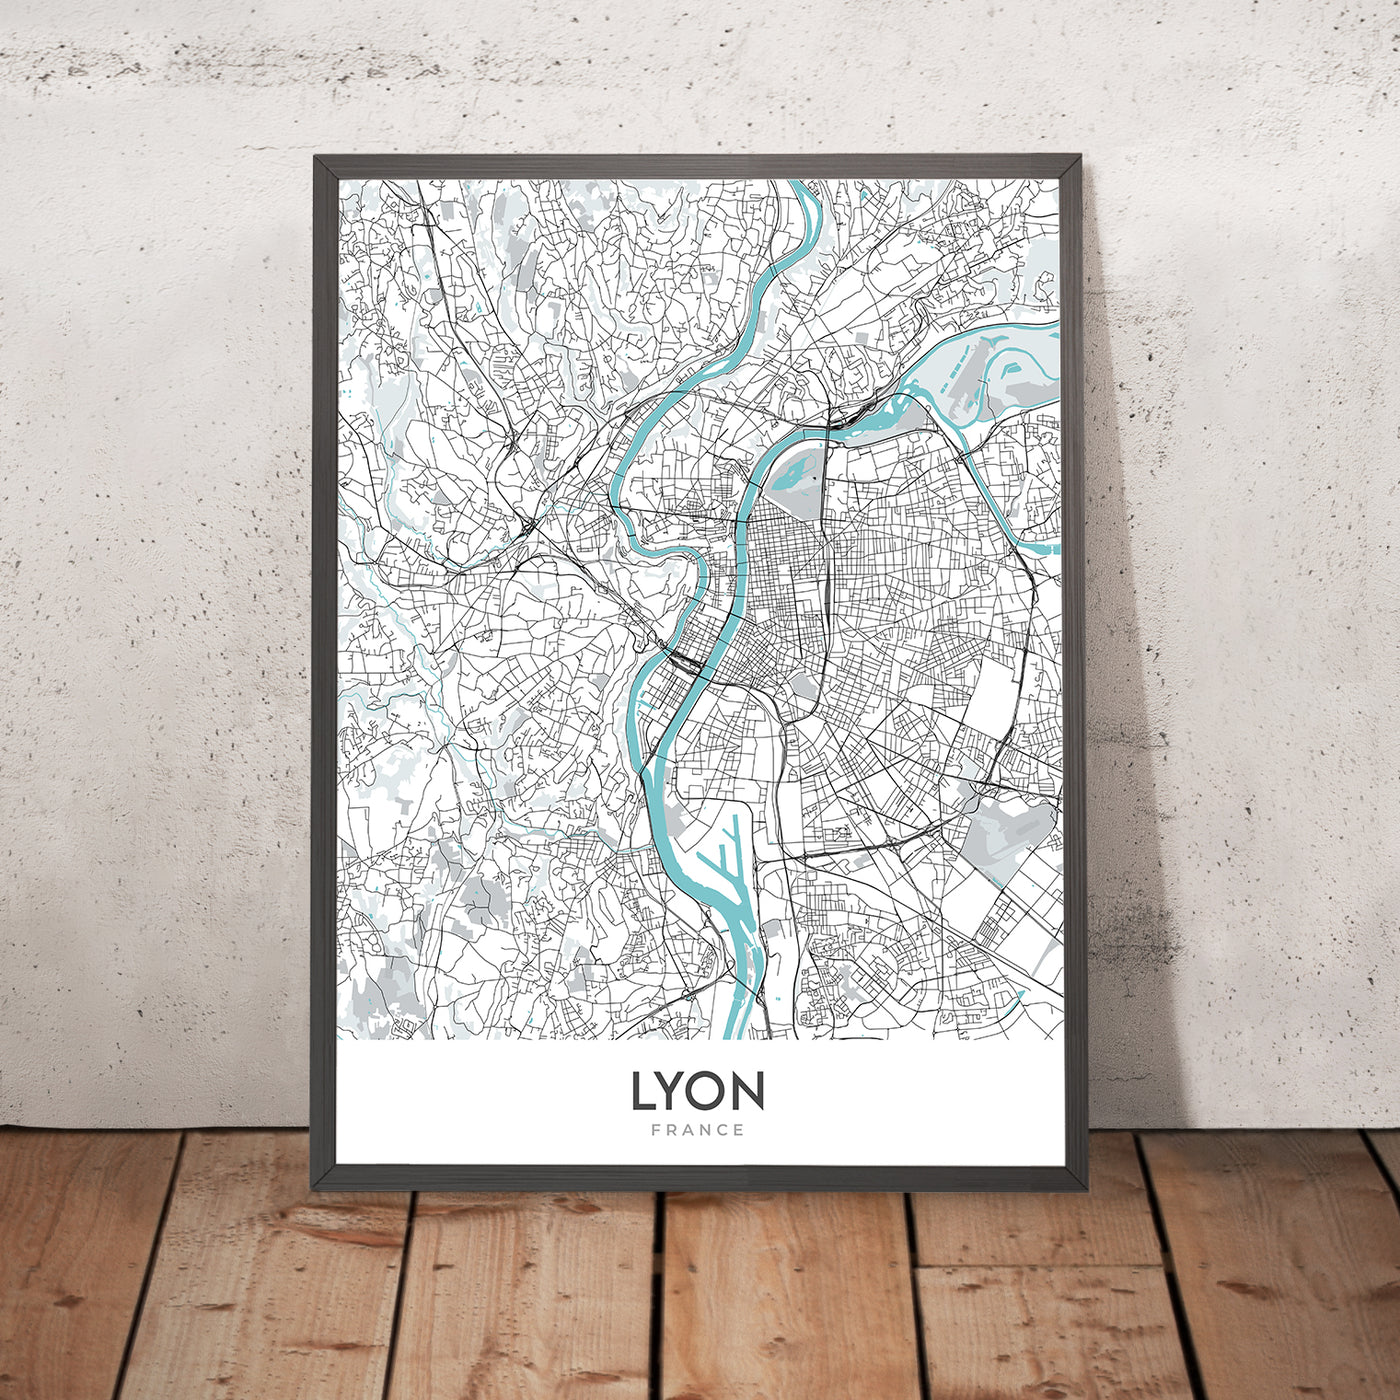 Modern City Map of Lyon, France: Croix-Rousse, Notre-Dame, Parc de la Tête d'Or, Presqu'île, Vieux Lyon